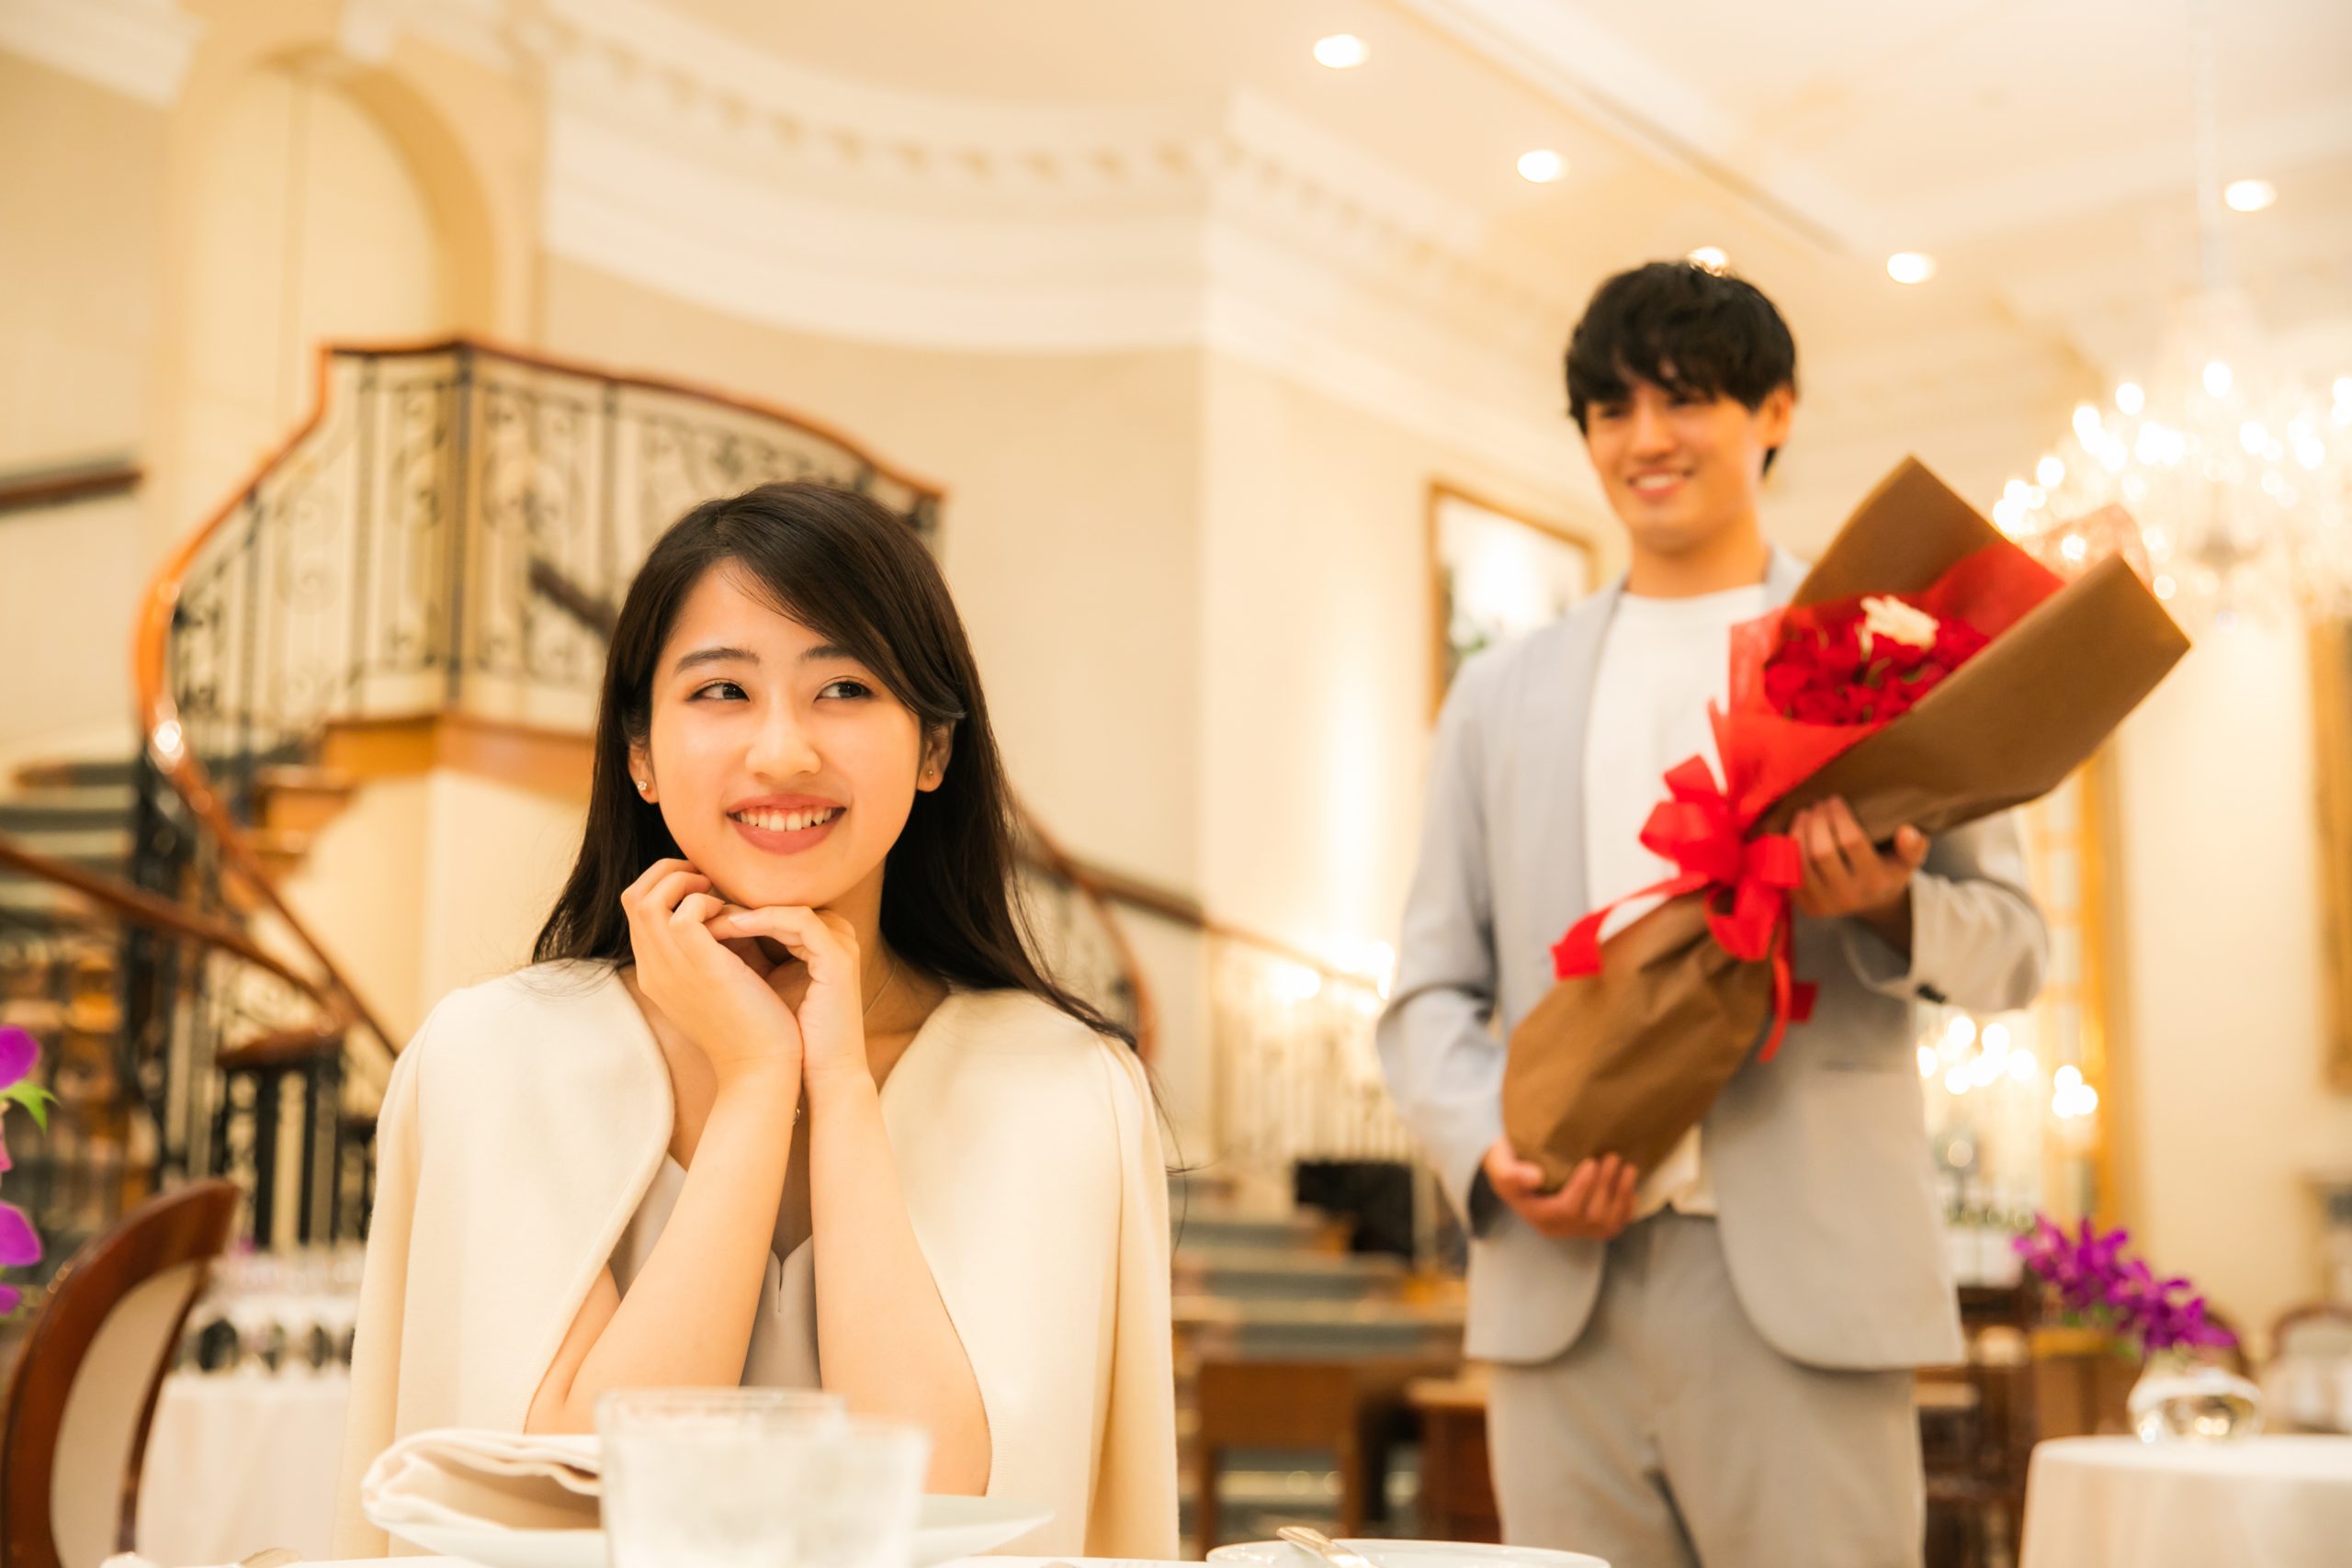 レストランで女性へ花束を贈りプロポーズしようとする男性